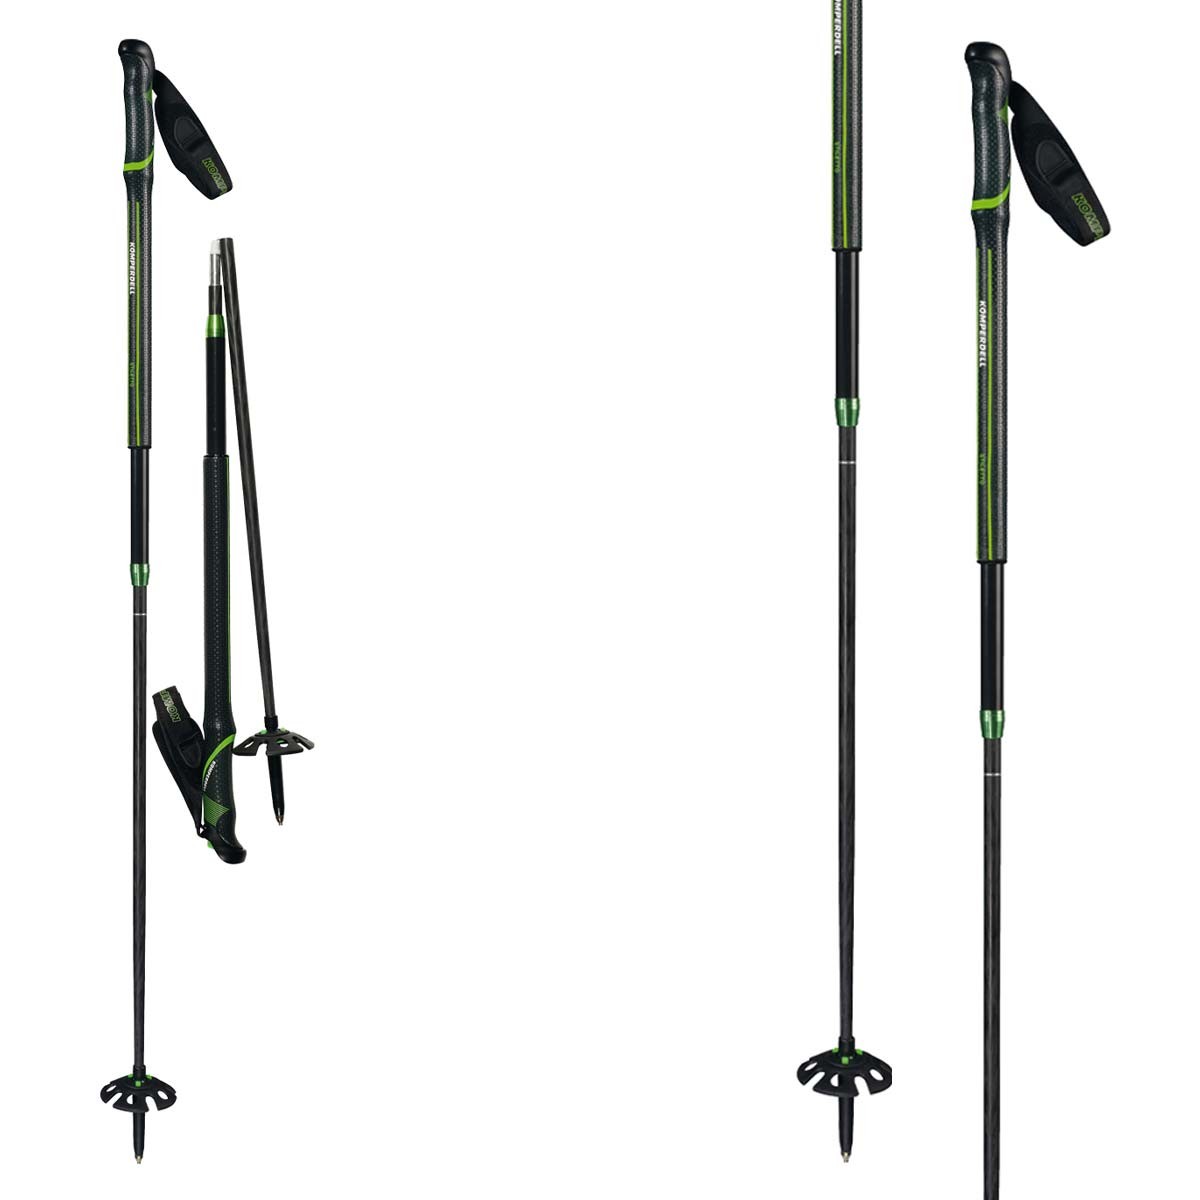  Bastoni Alpinismo Komperdell Stiletto Stiletto Expedition (Colore: nero verde, Taglia: UNI) 